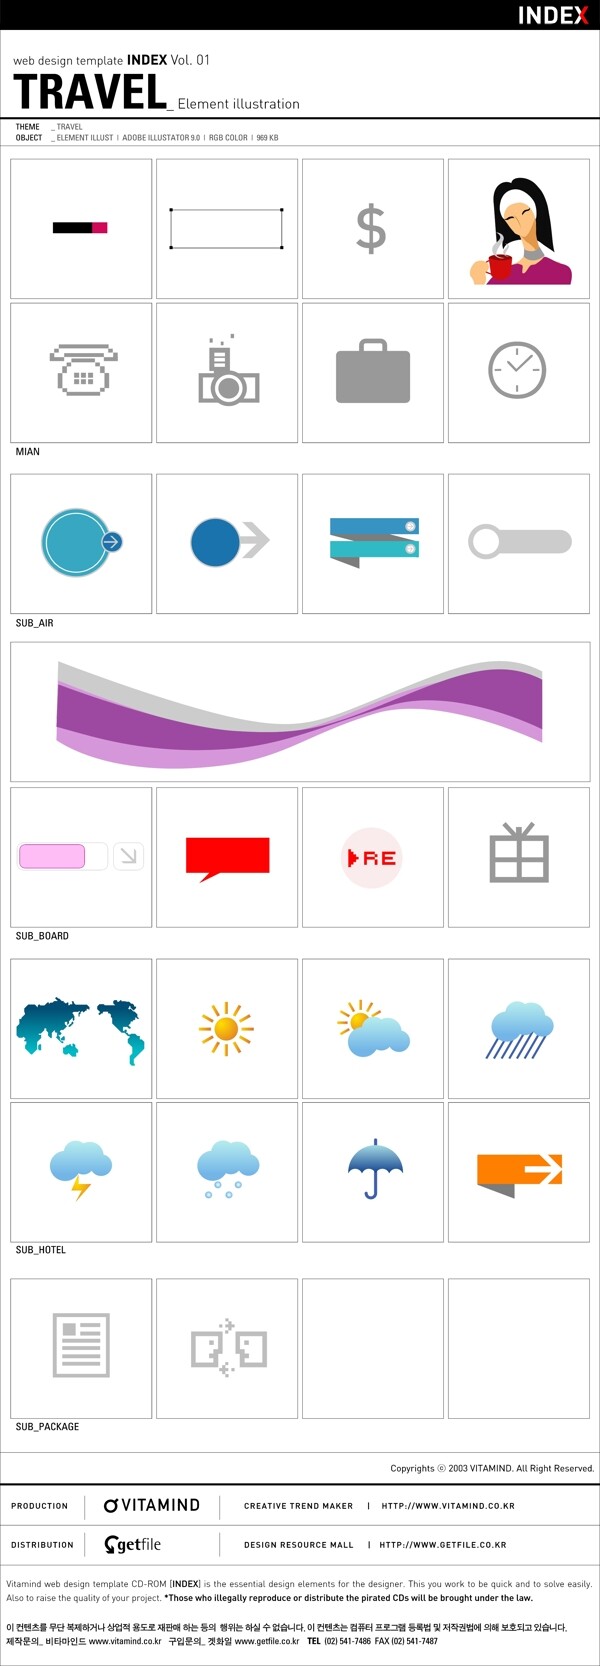 韩国天气预报矢量图标25